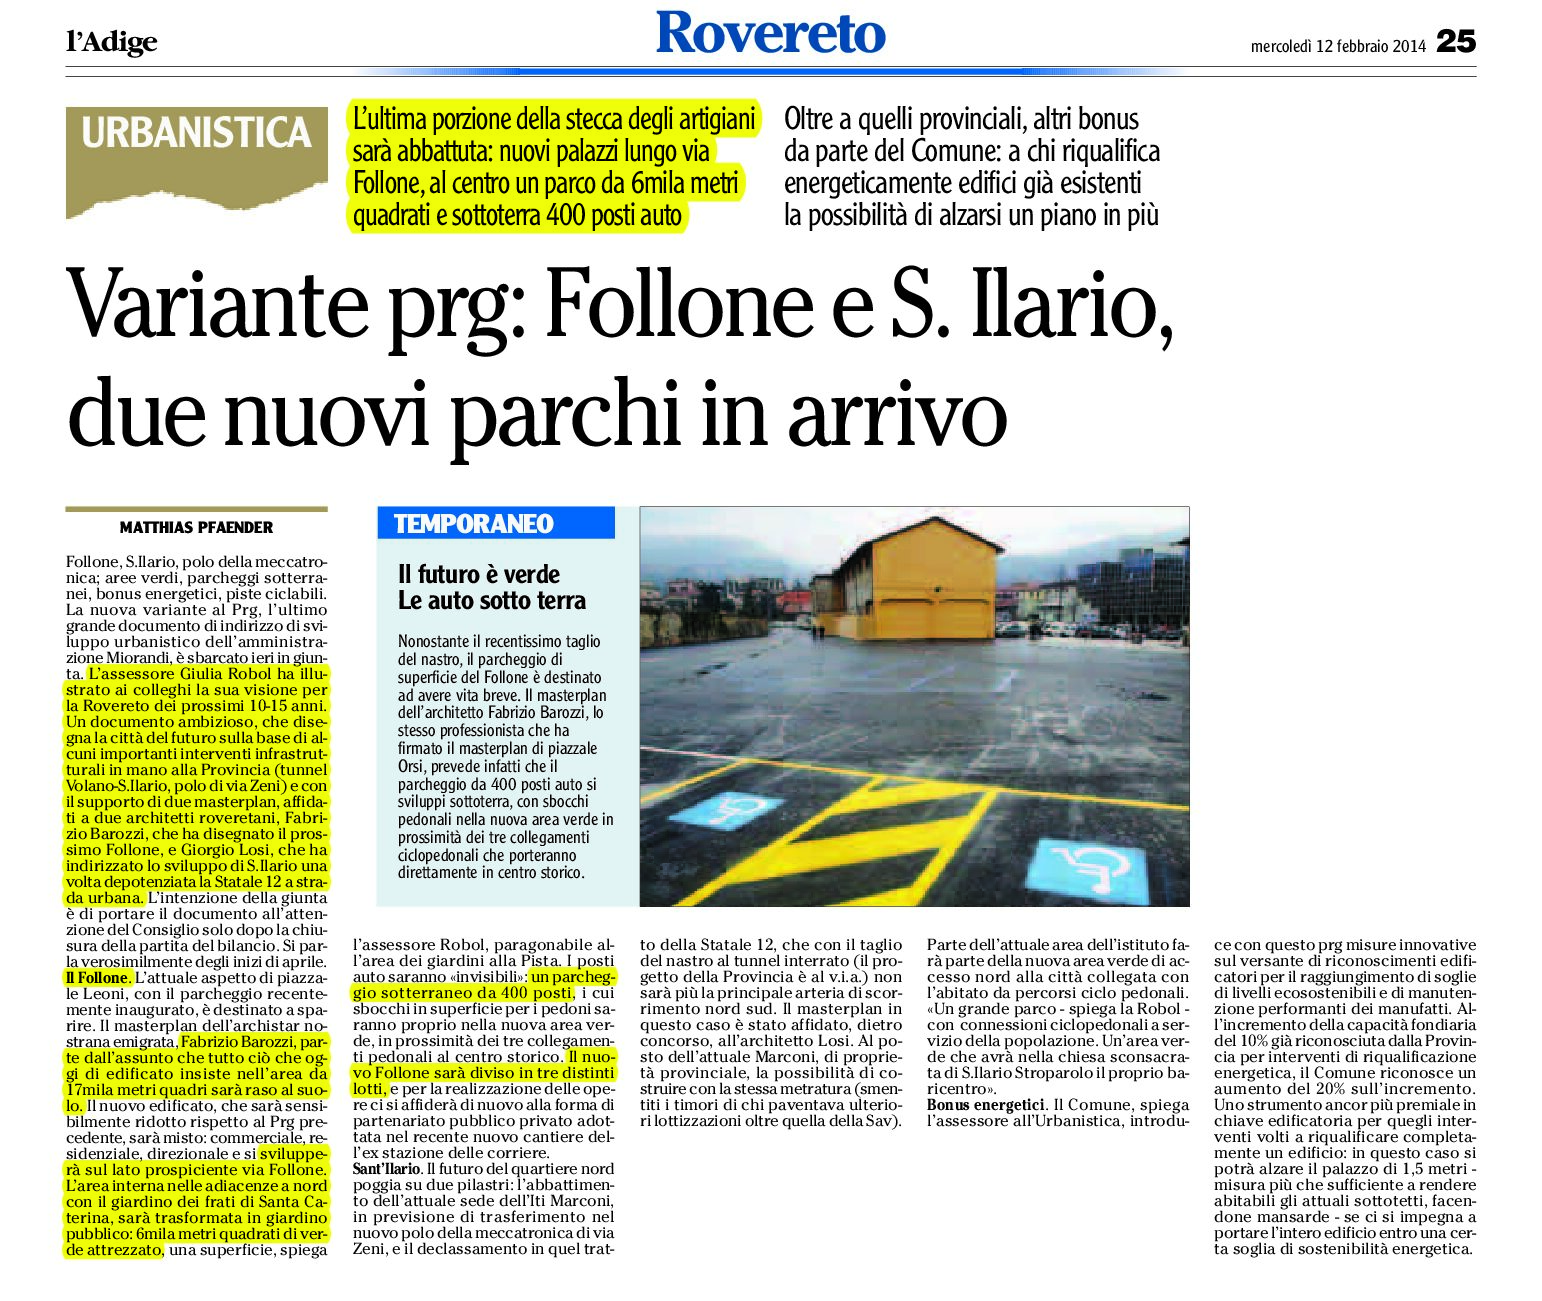 Rovereto: variante Prg, Follone e S.Ilario due nuovi parchi in arrivo.